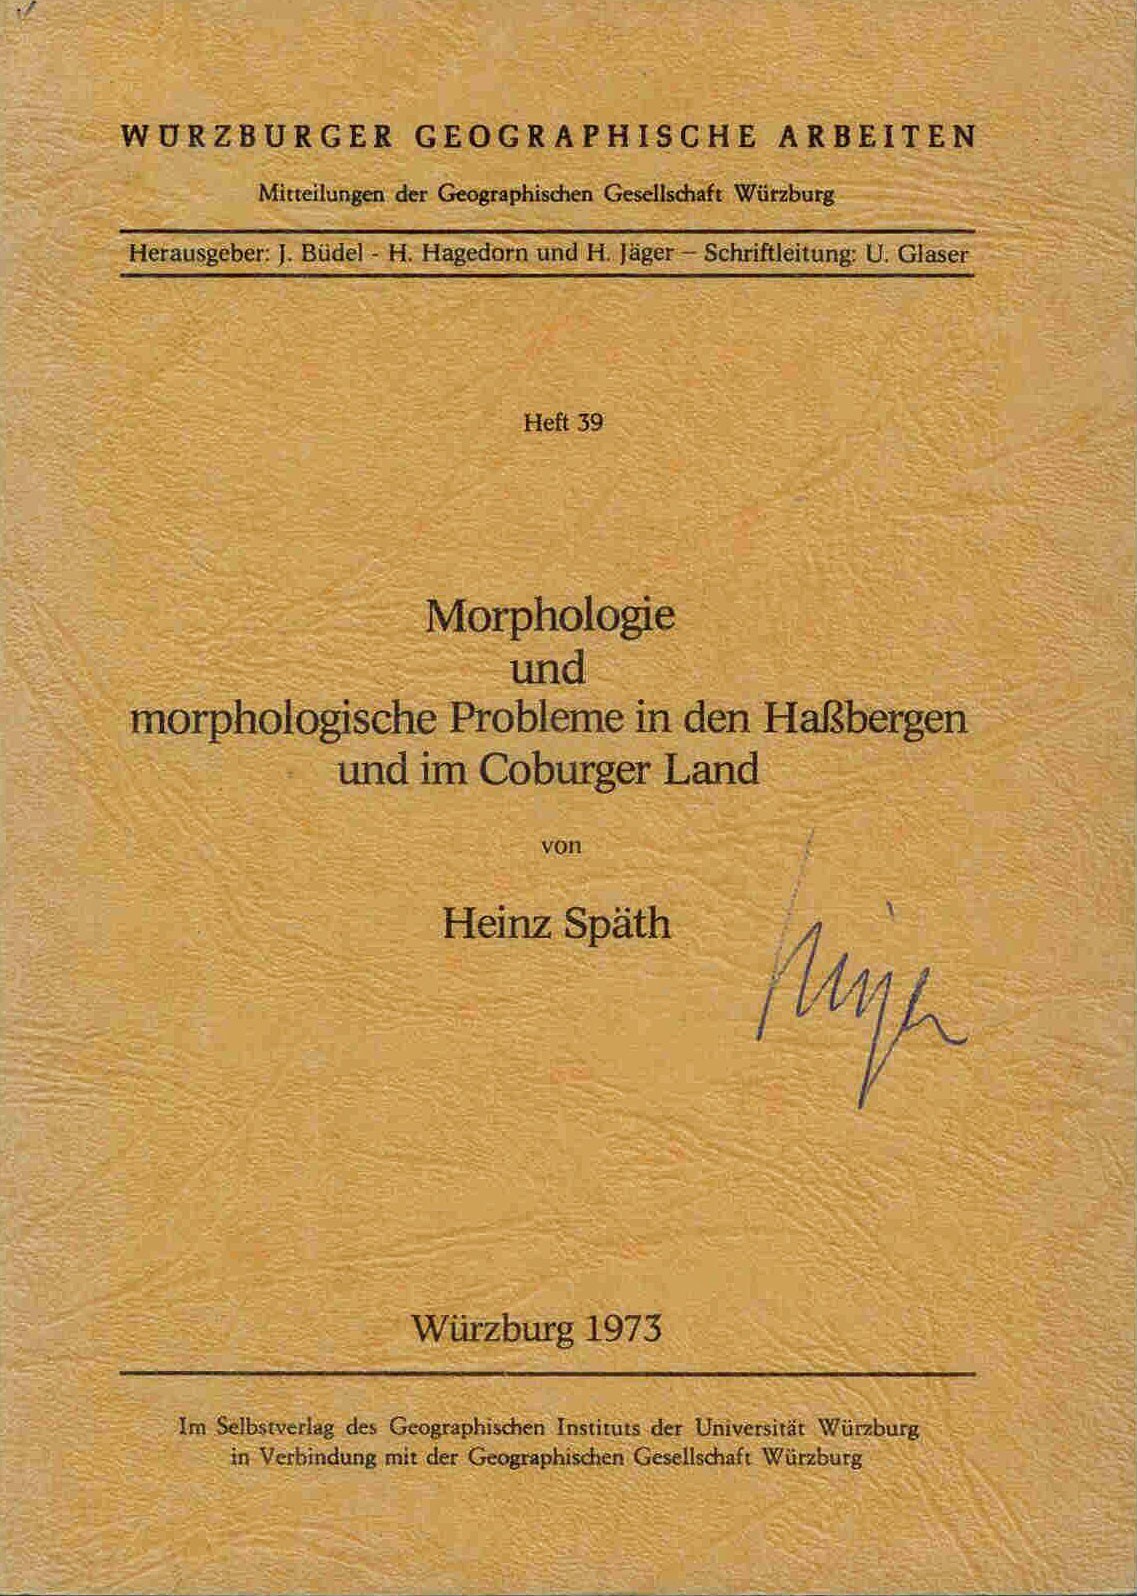 Späth, H.: Morphologie und morphologische Probleme in den Haßbergen und im Coburger Land.